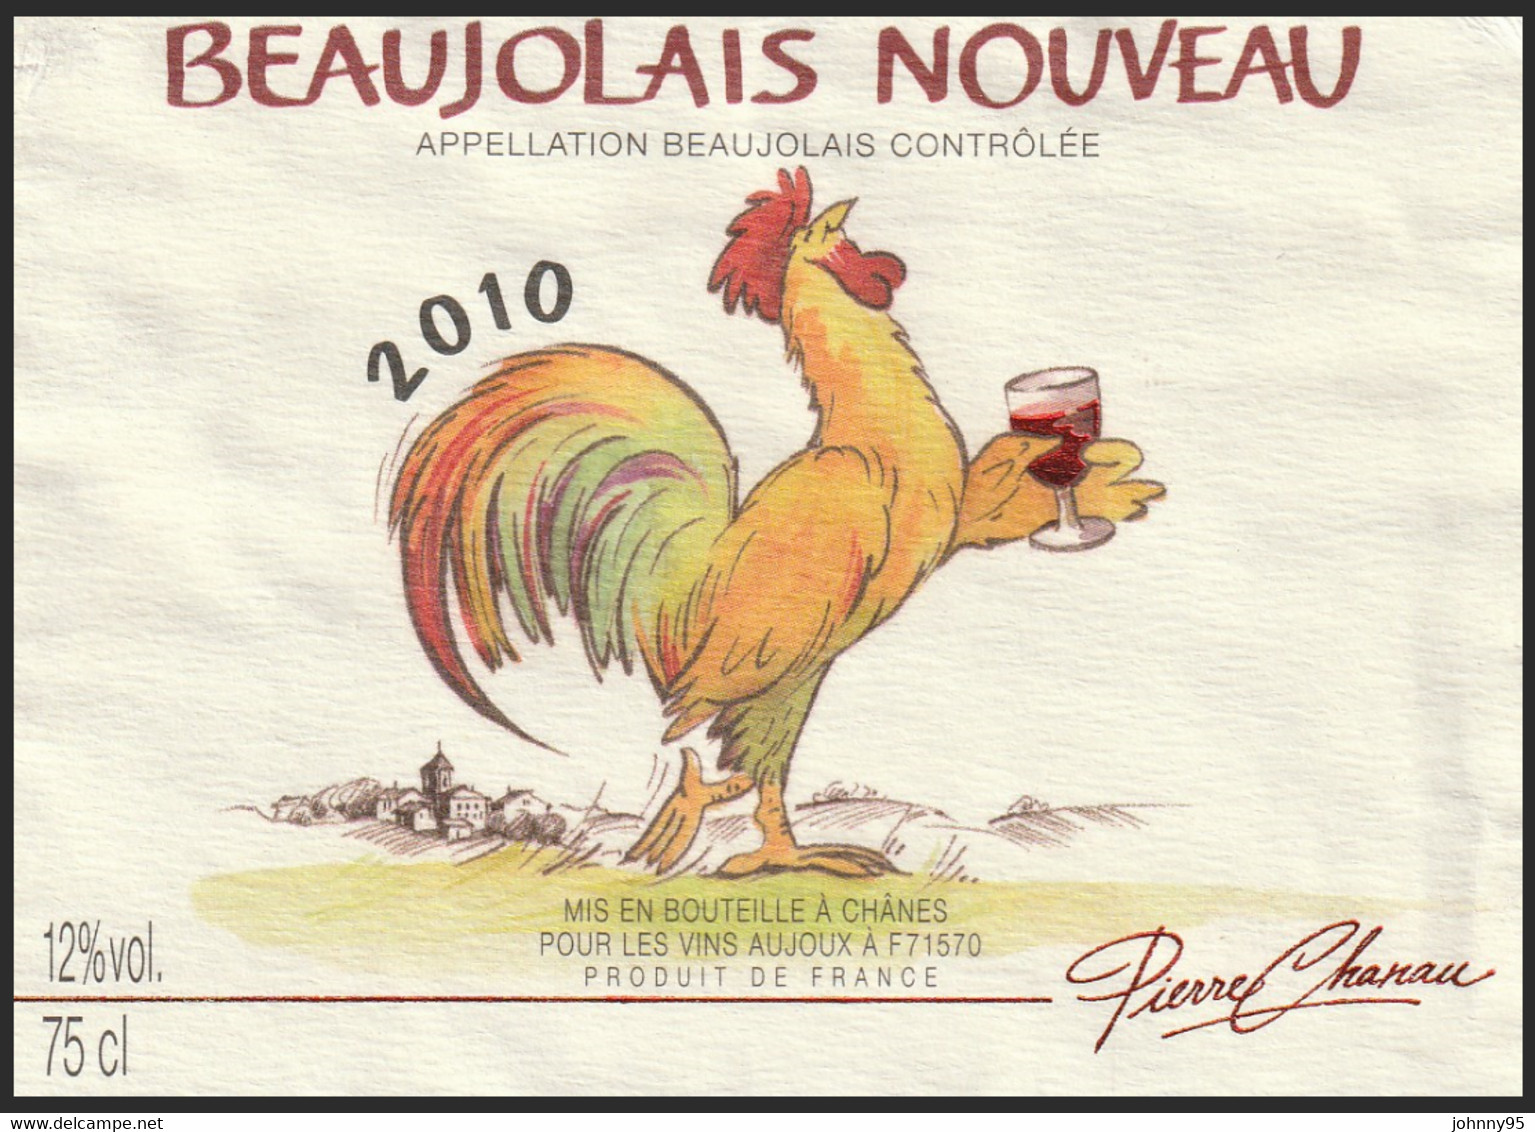 Coq Sur étiquette De Vin - Beaujolais Nouveau 2010 Pierre Chanau - Vins Aujoux : Chânes Saône Et Loire - Gallos